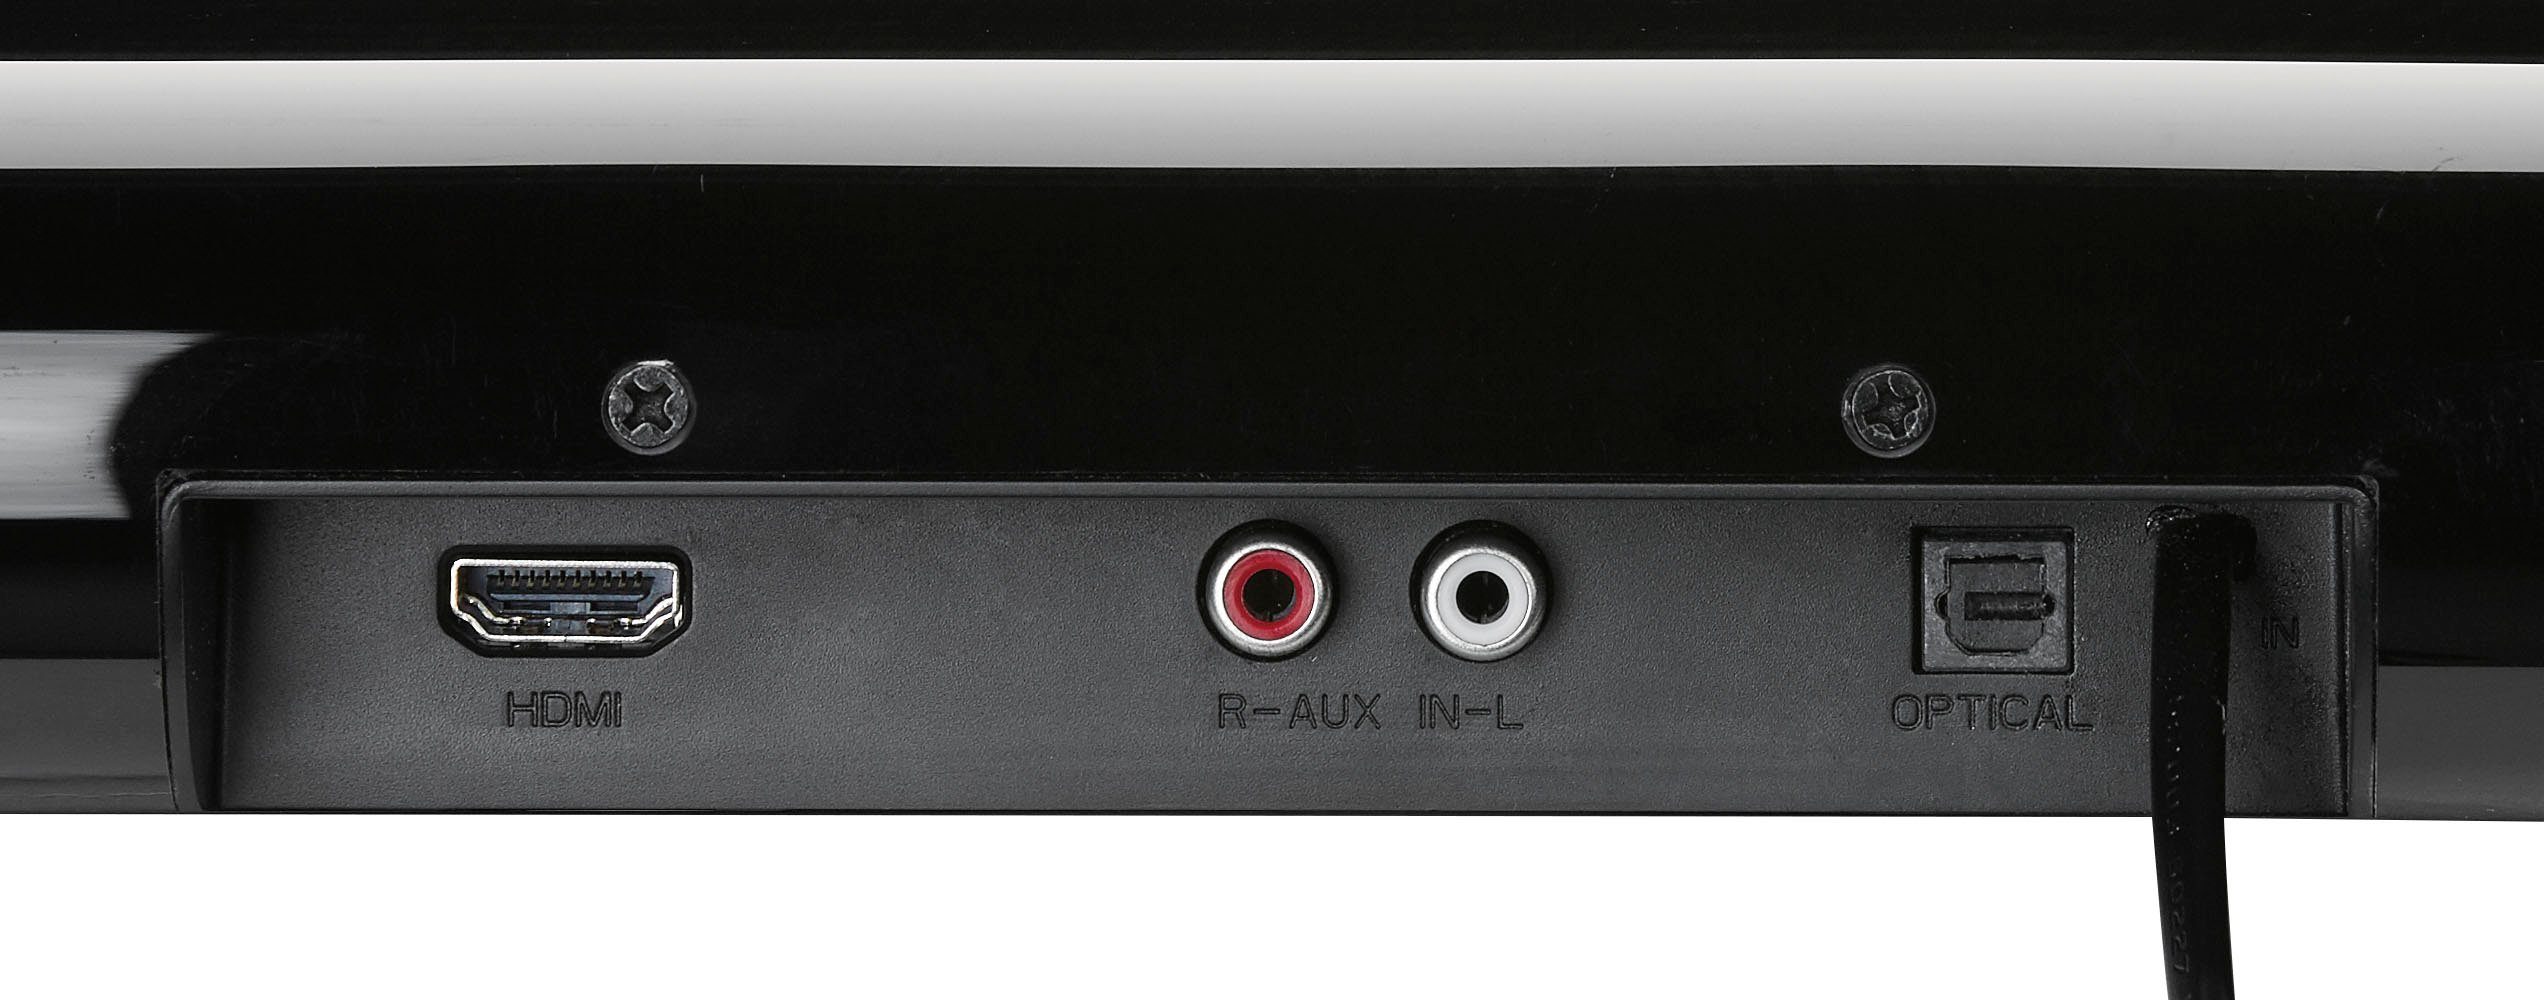 Grundig DSB 950 W) 40 schwarz Soundbar (Bluetooth, 2.0